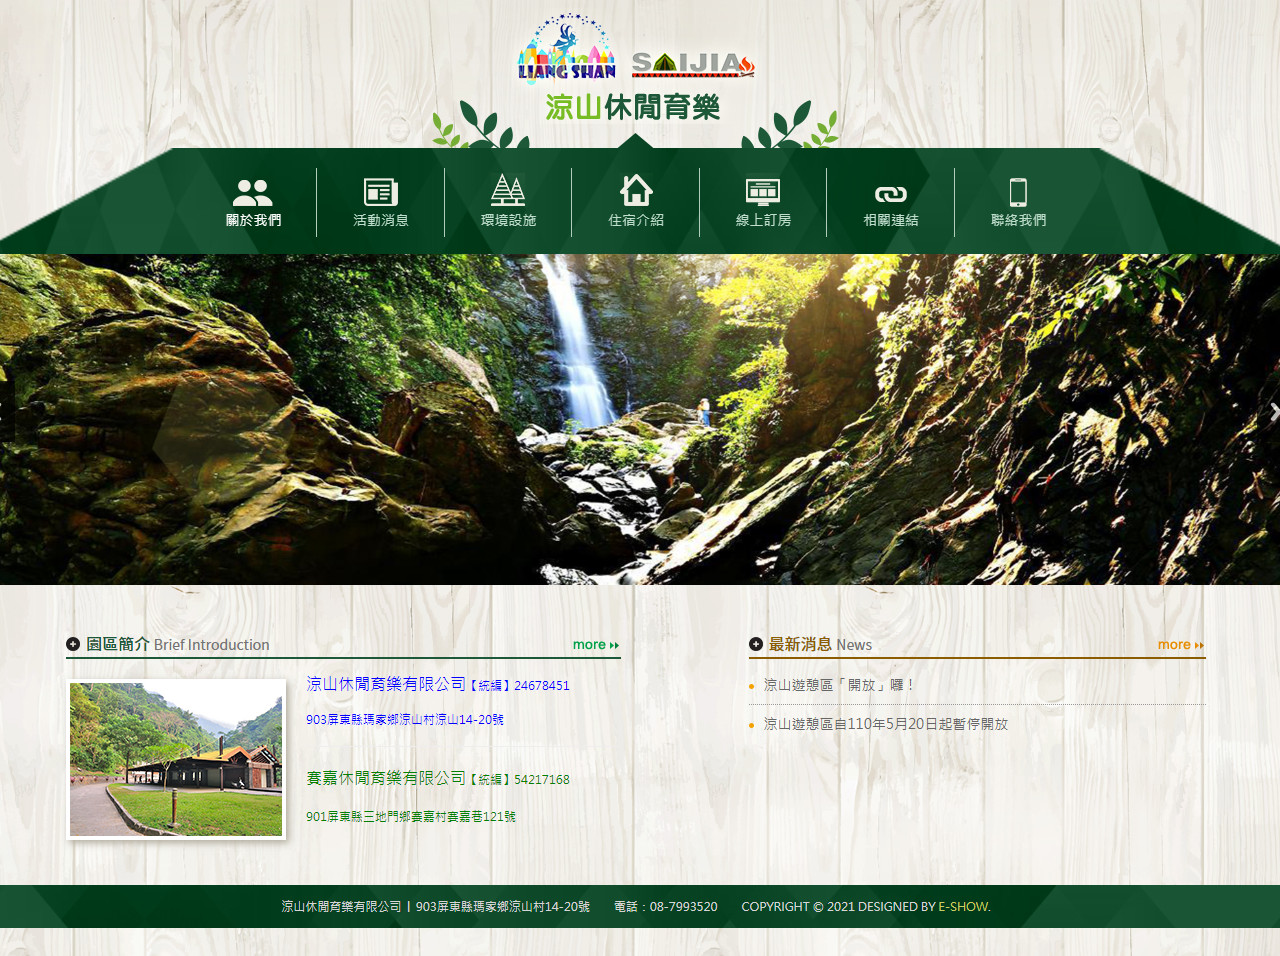 涼山休閒育樂有限公司 休閒遊樂區網站設計
網站設計